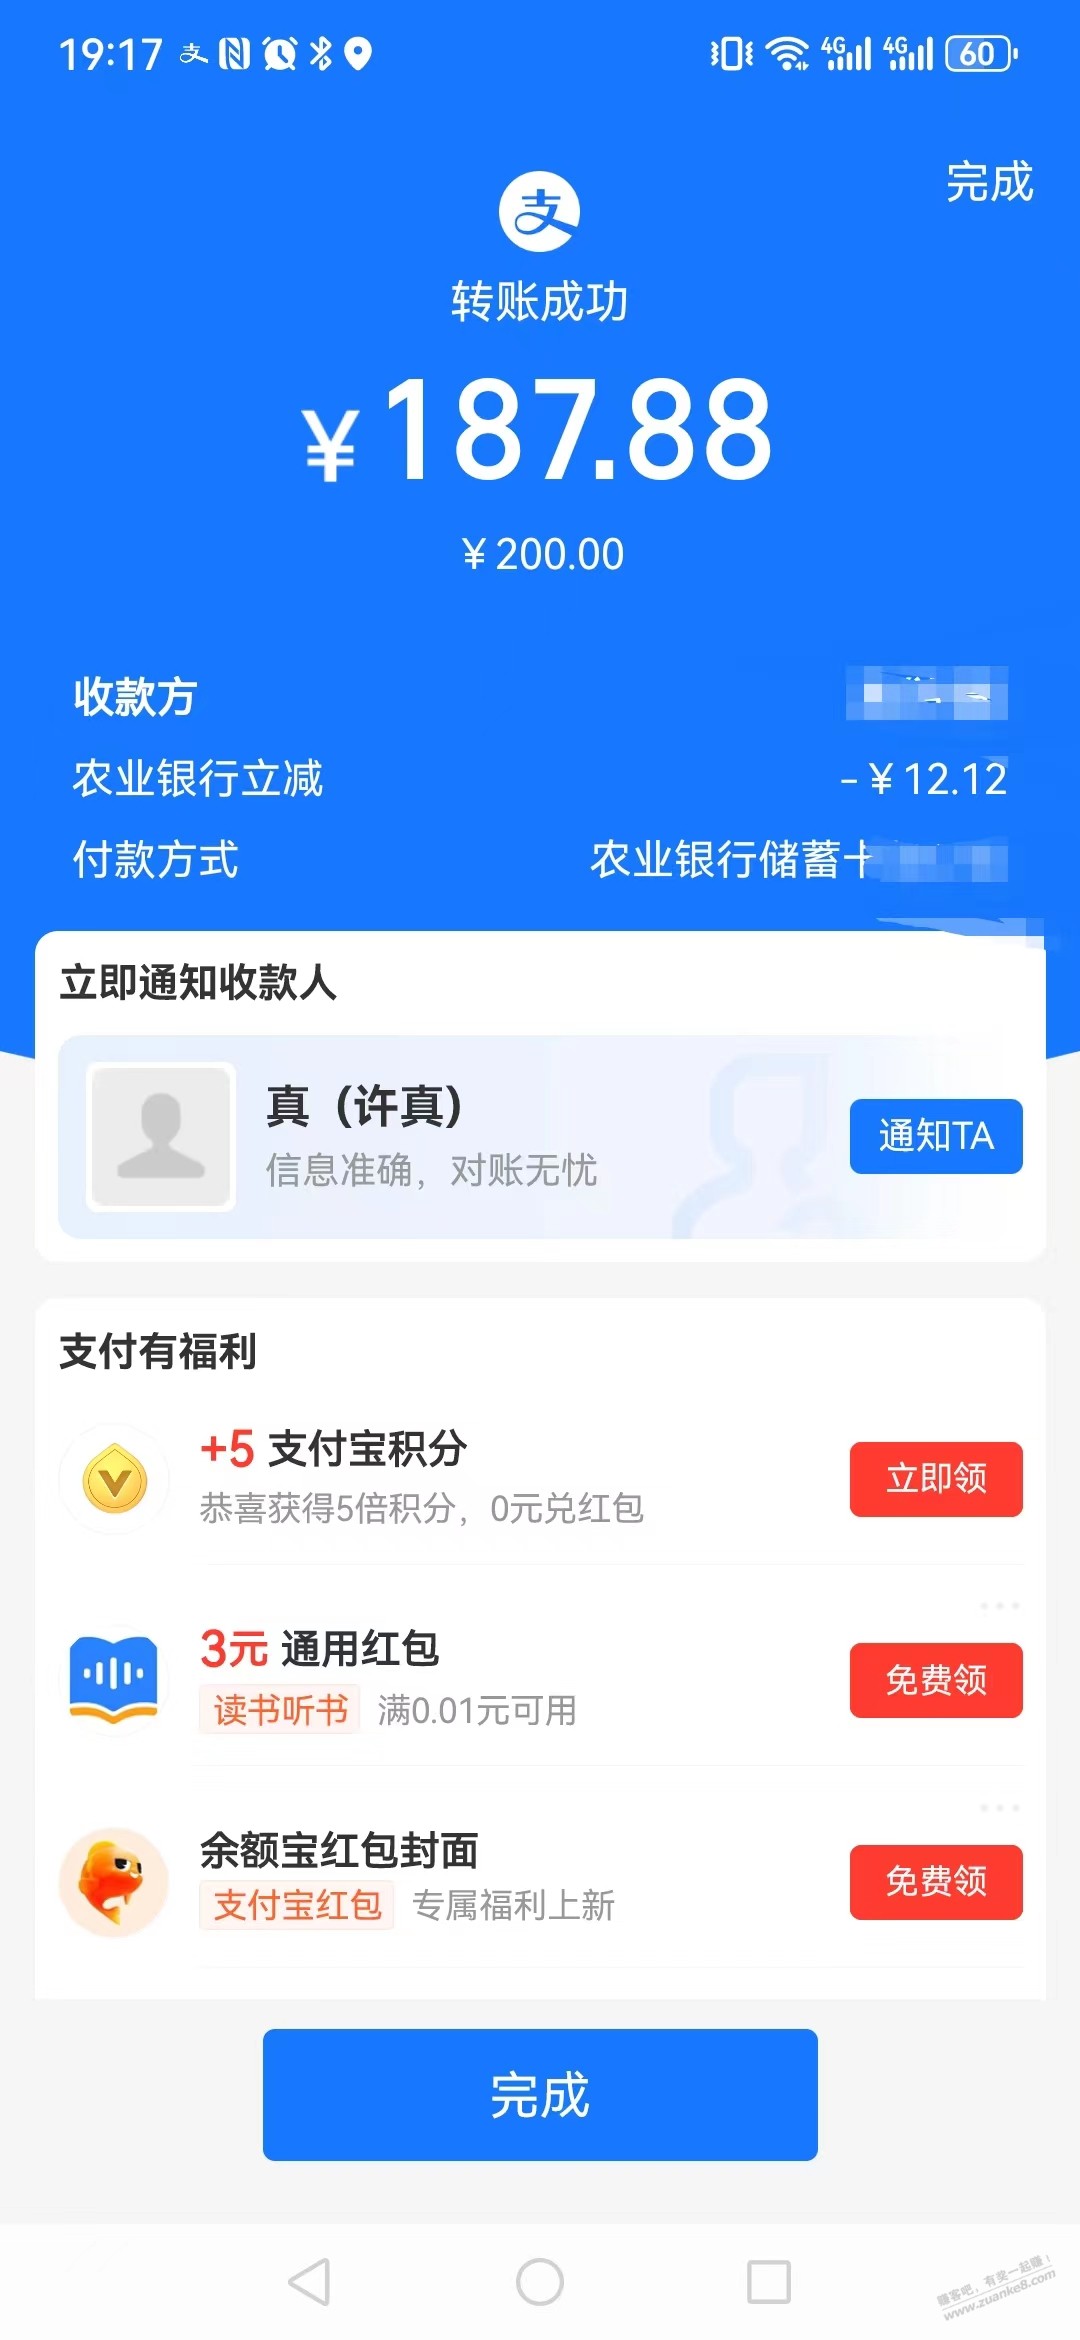 安徽农行支付宝转账200-12.12-惠小助(52huixz.com)